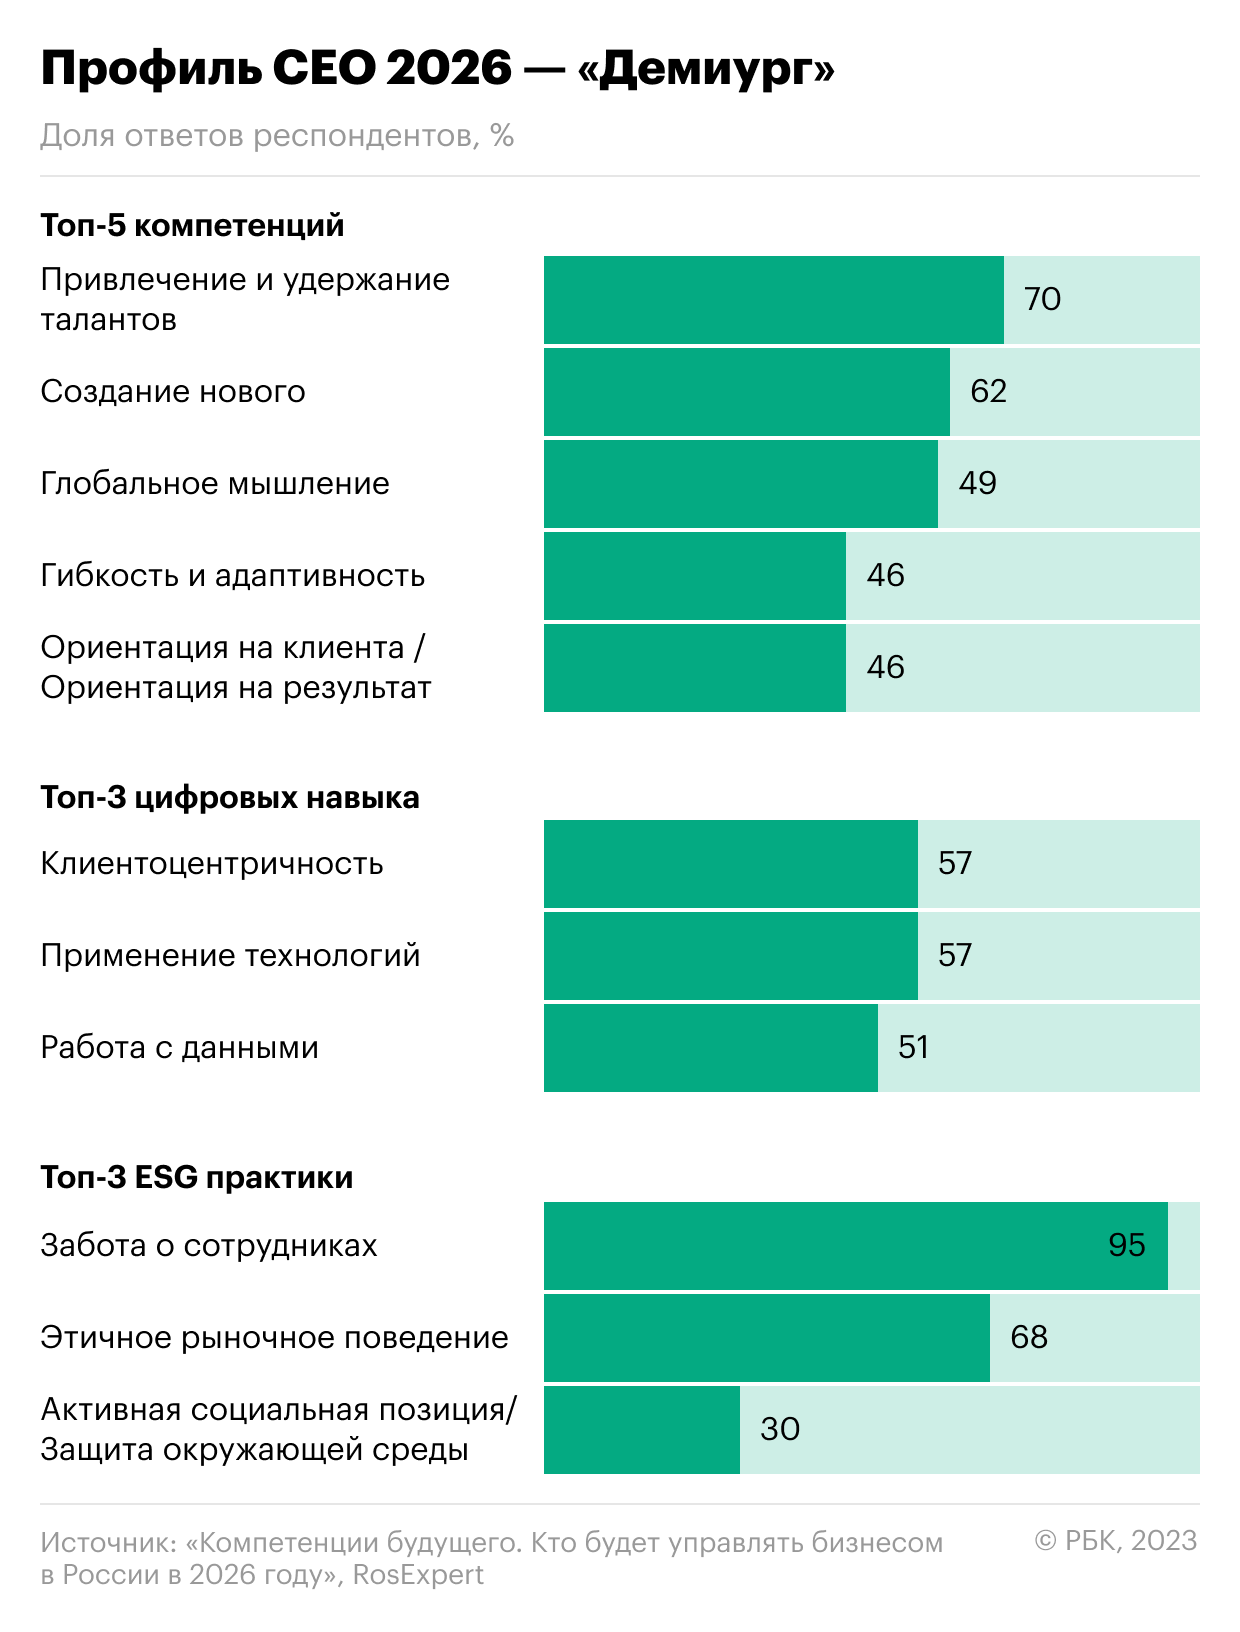 5 трендов экономики: CEO-демиурги и индустрии будущего в России